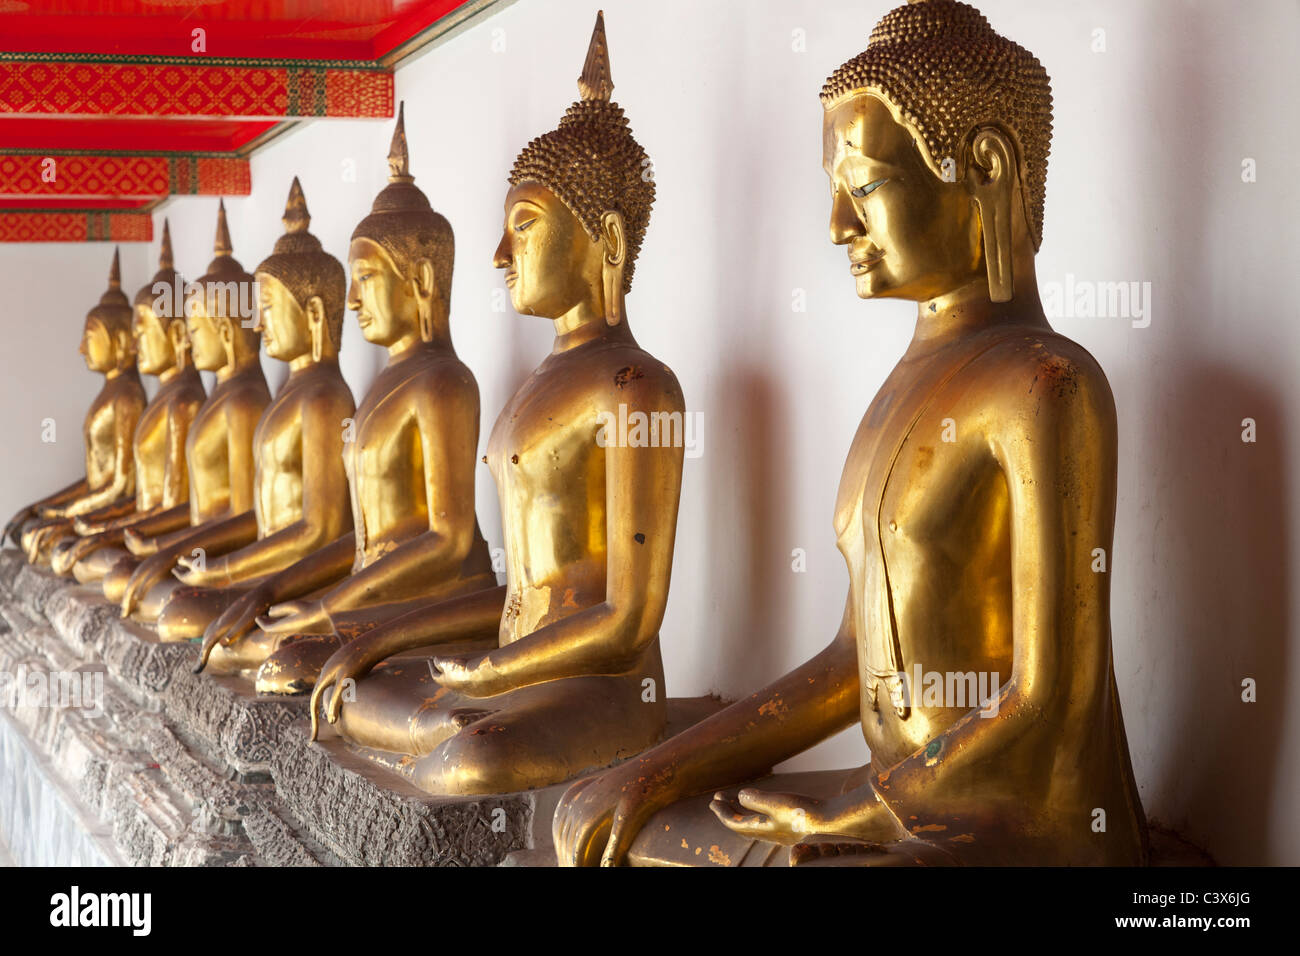 Temple de Wat Pho, Bangkok - rangée de bouddhas assis 7 Banque D'Images